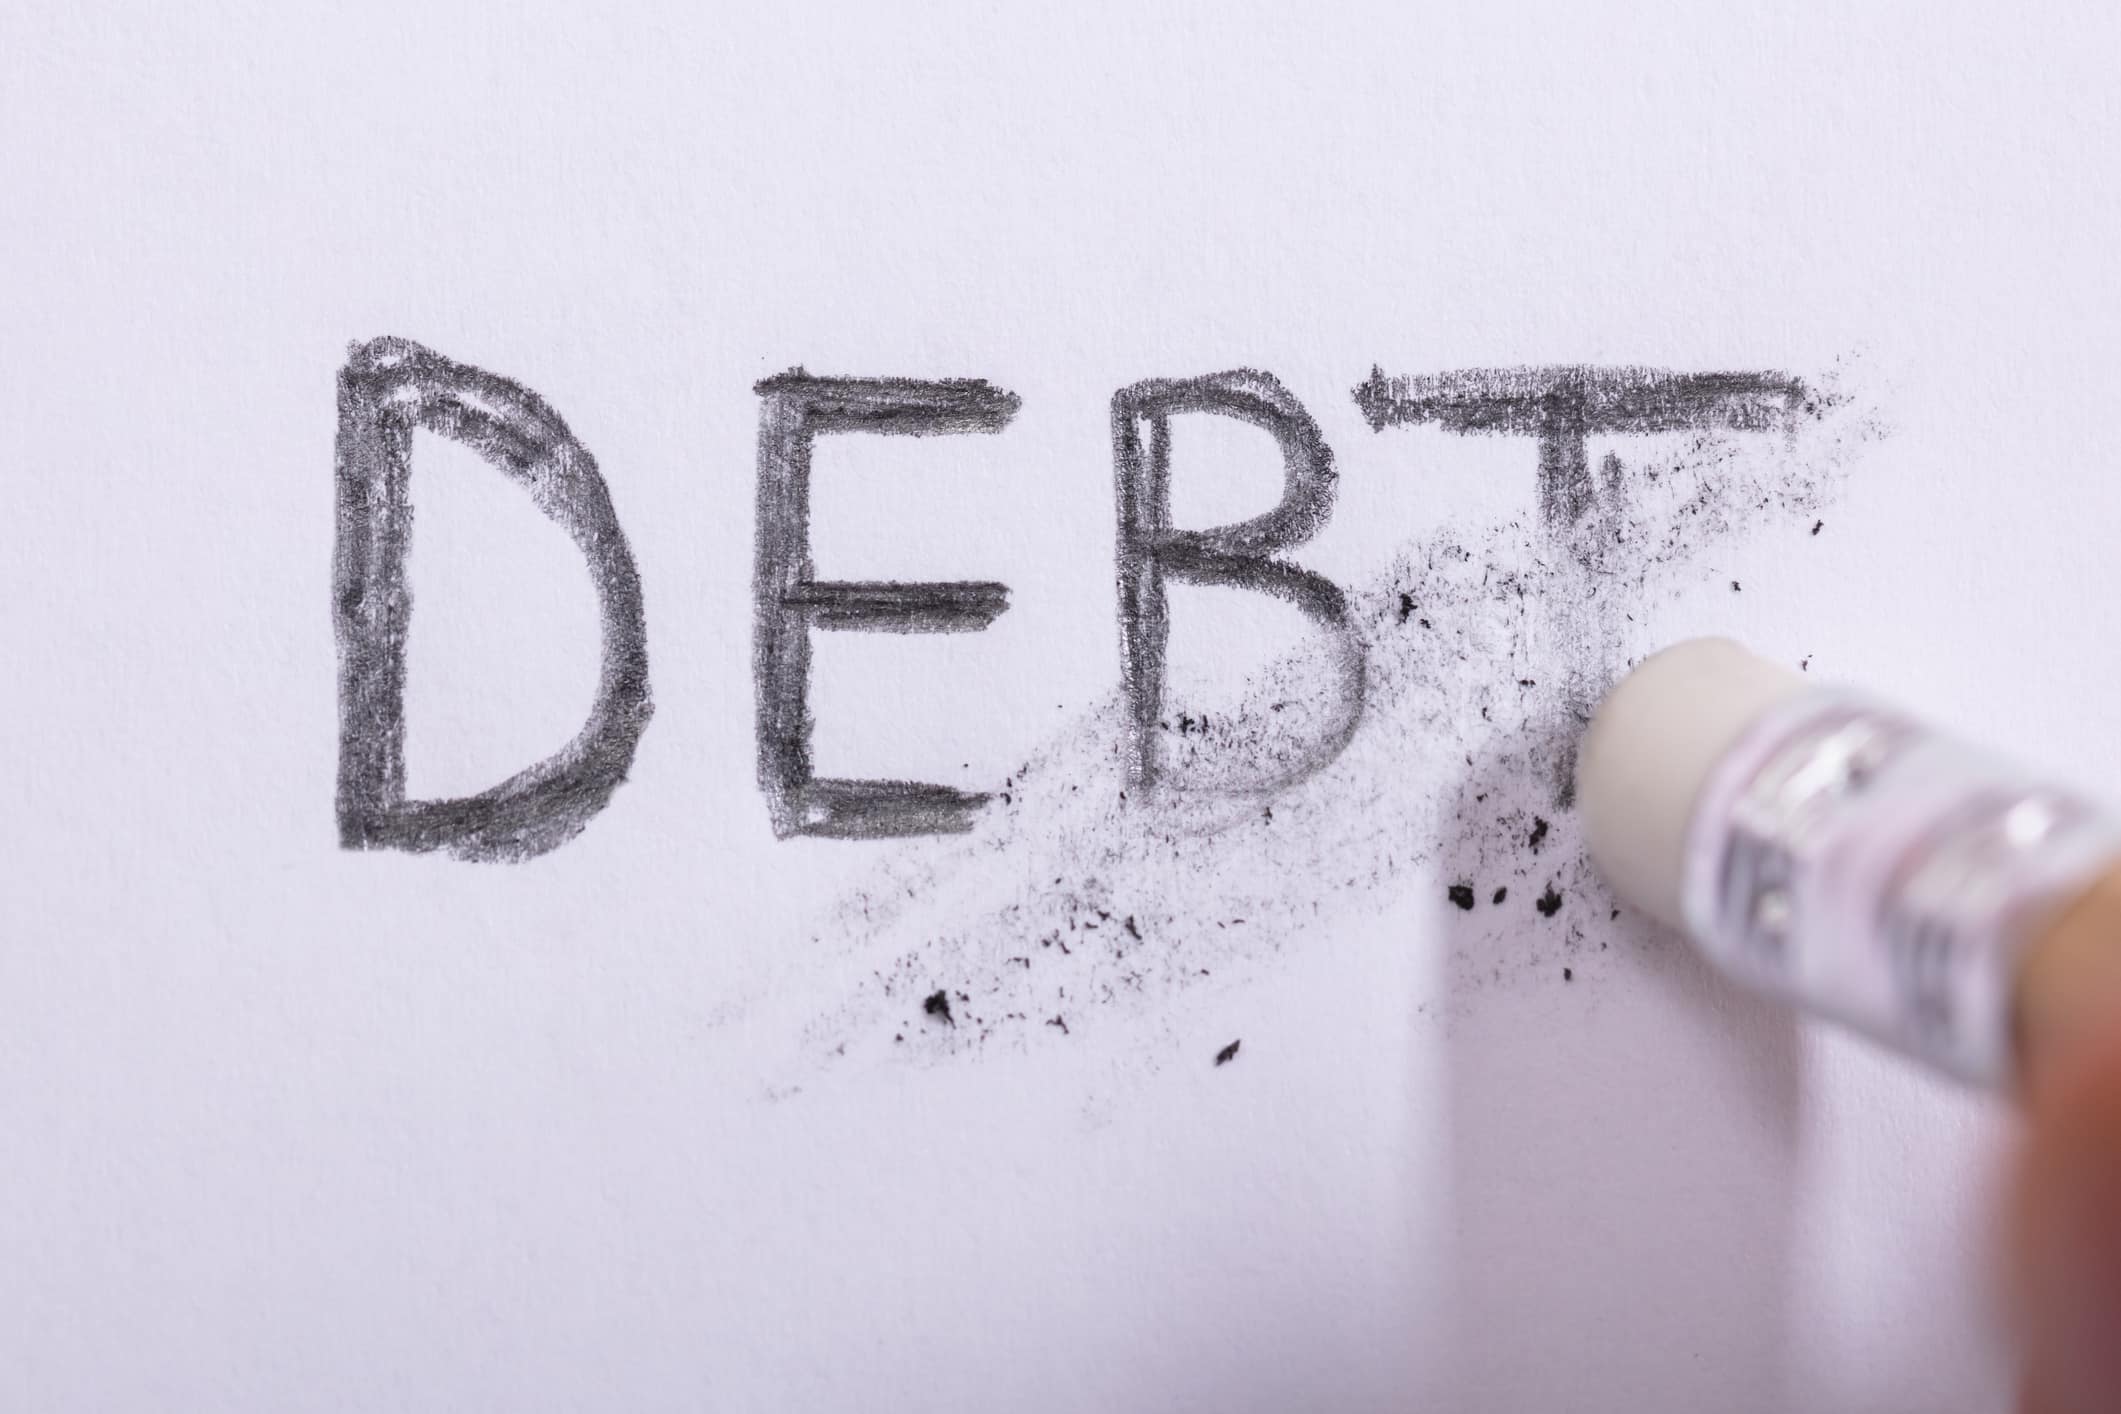 Pencil erasing "debt" on white paper.